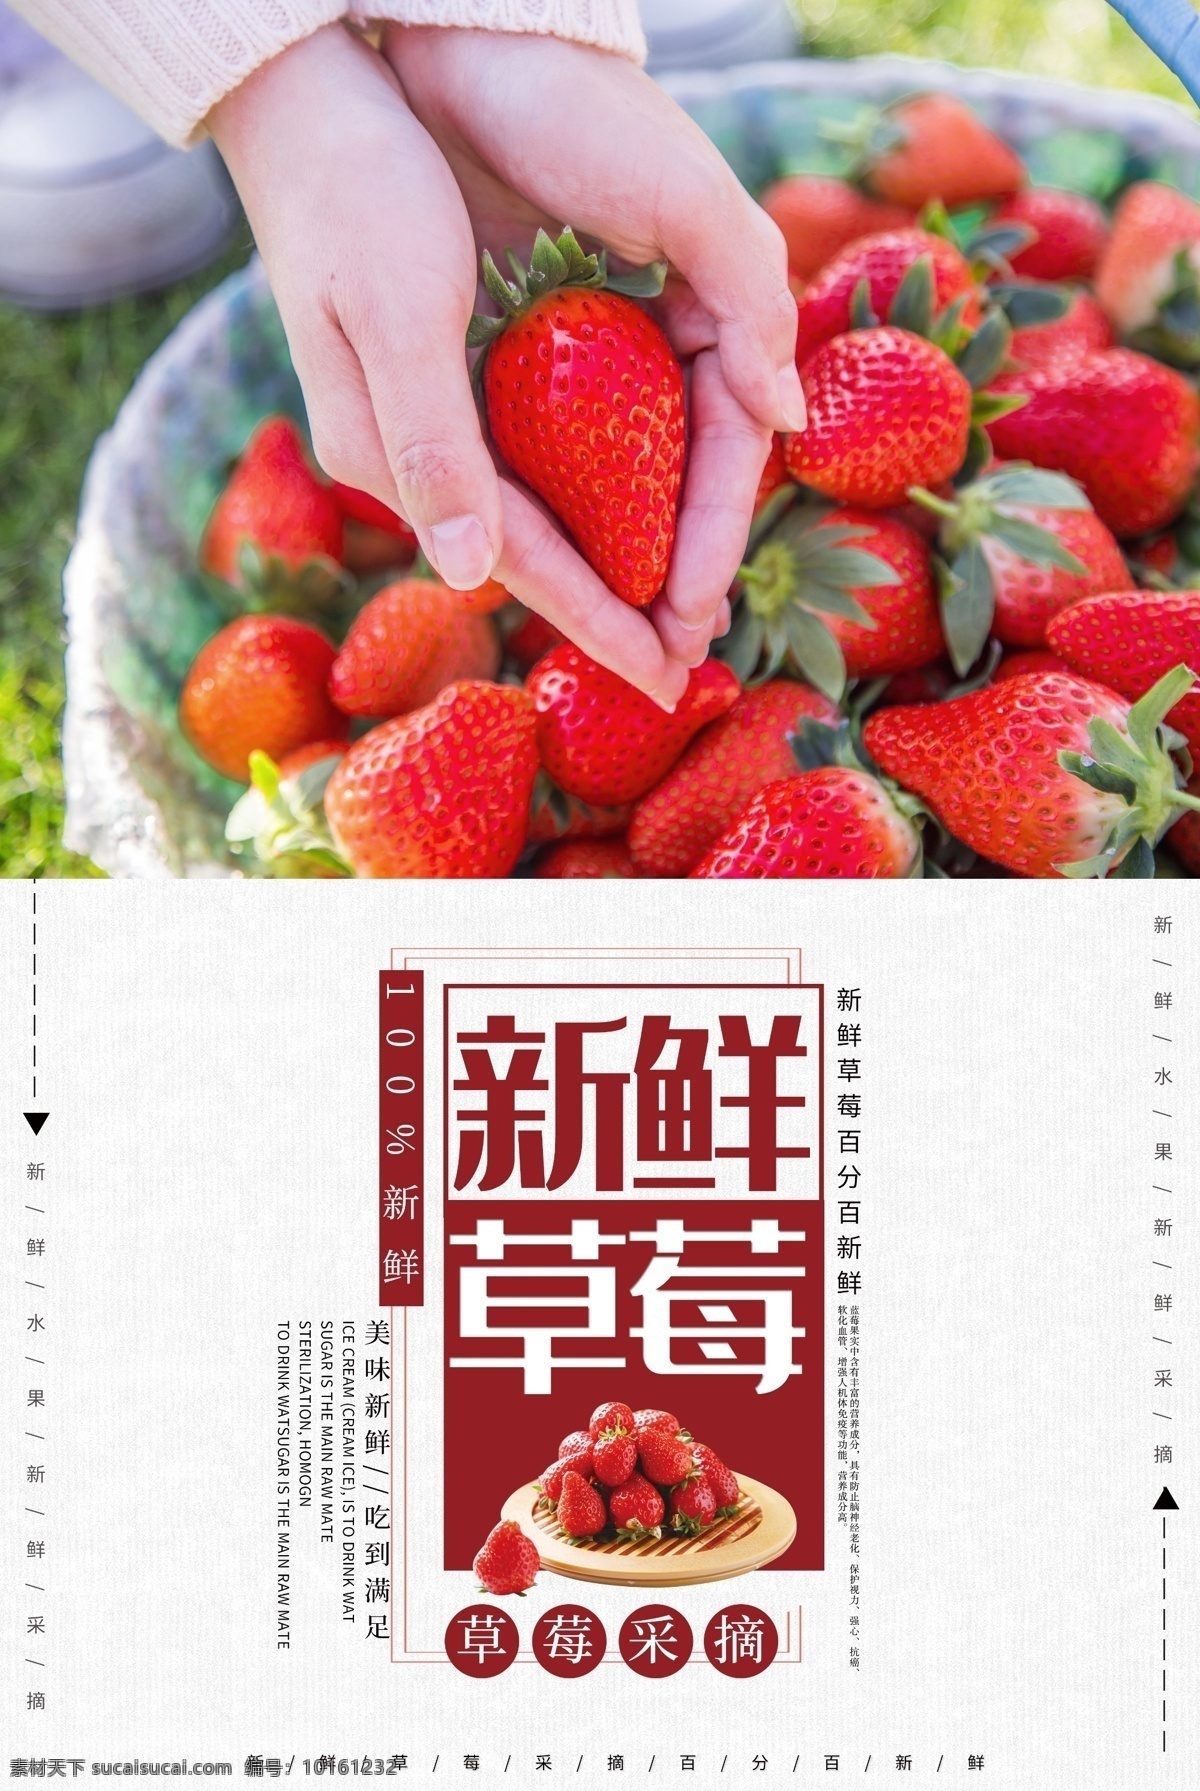 简洁 草莓 水果 海报 奶油草莓 水果海报 水果皇后 水果促销 促销海报 草莓采摘 新鲜草莓 水果店促销 水果宣传